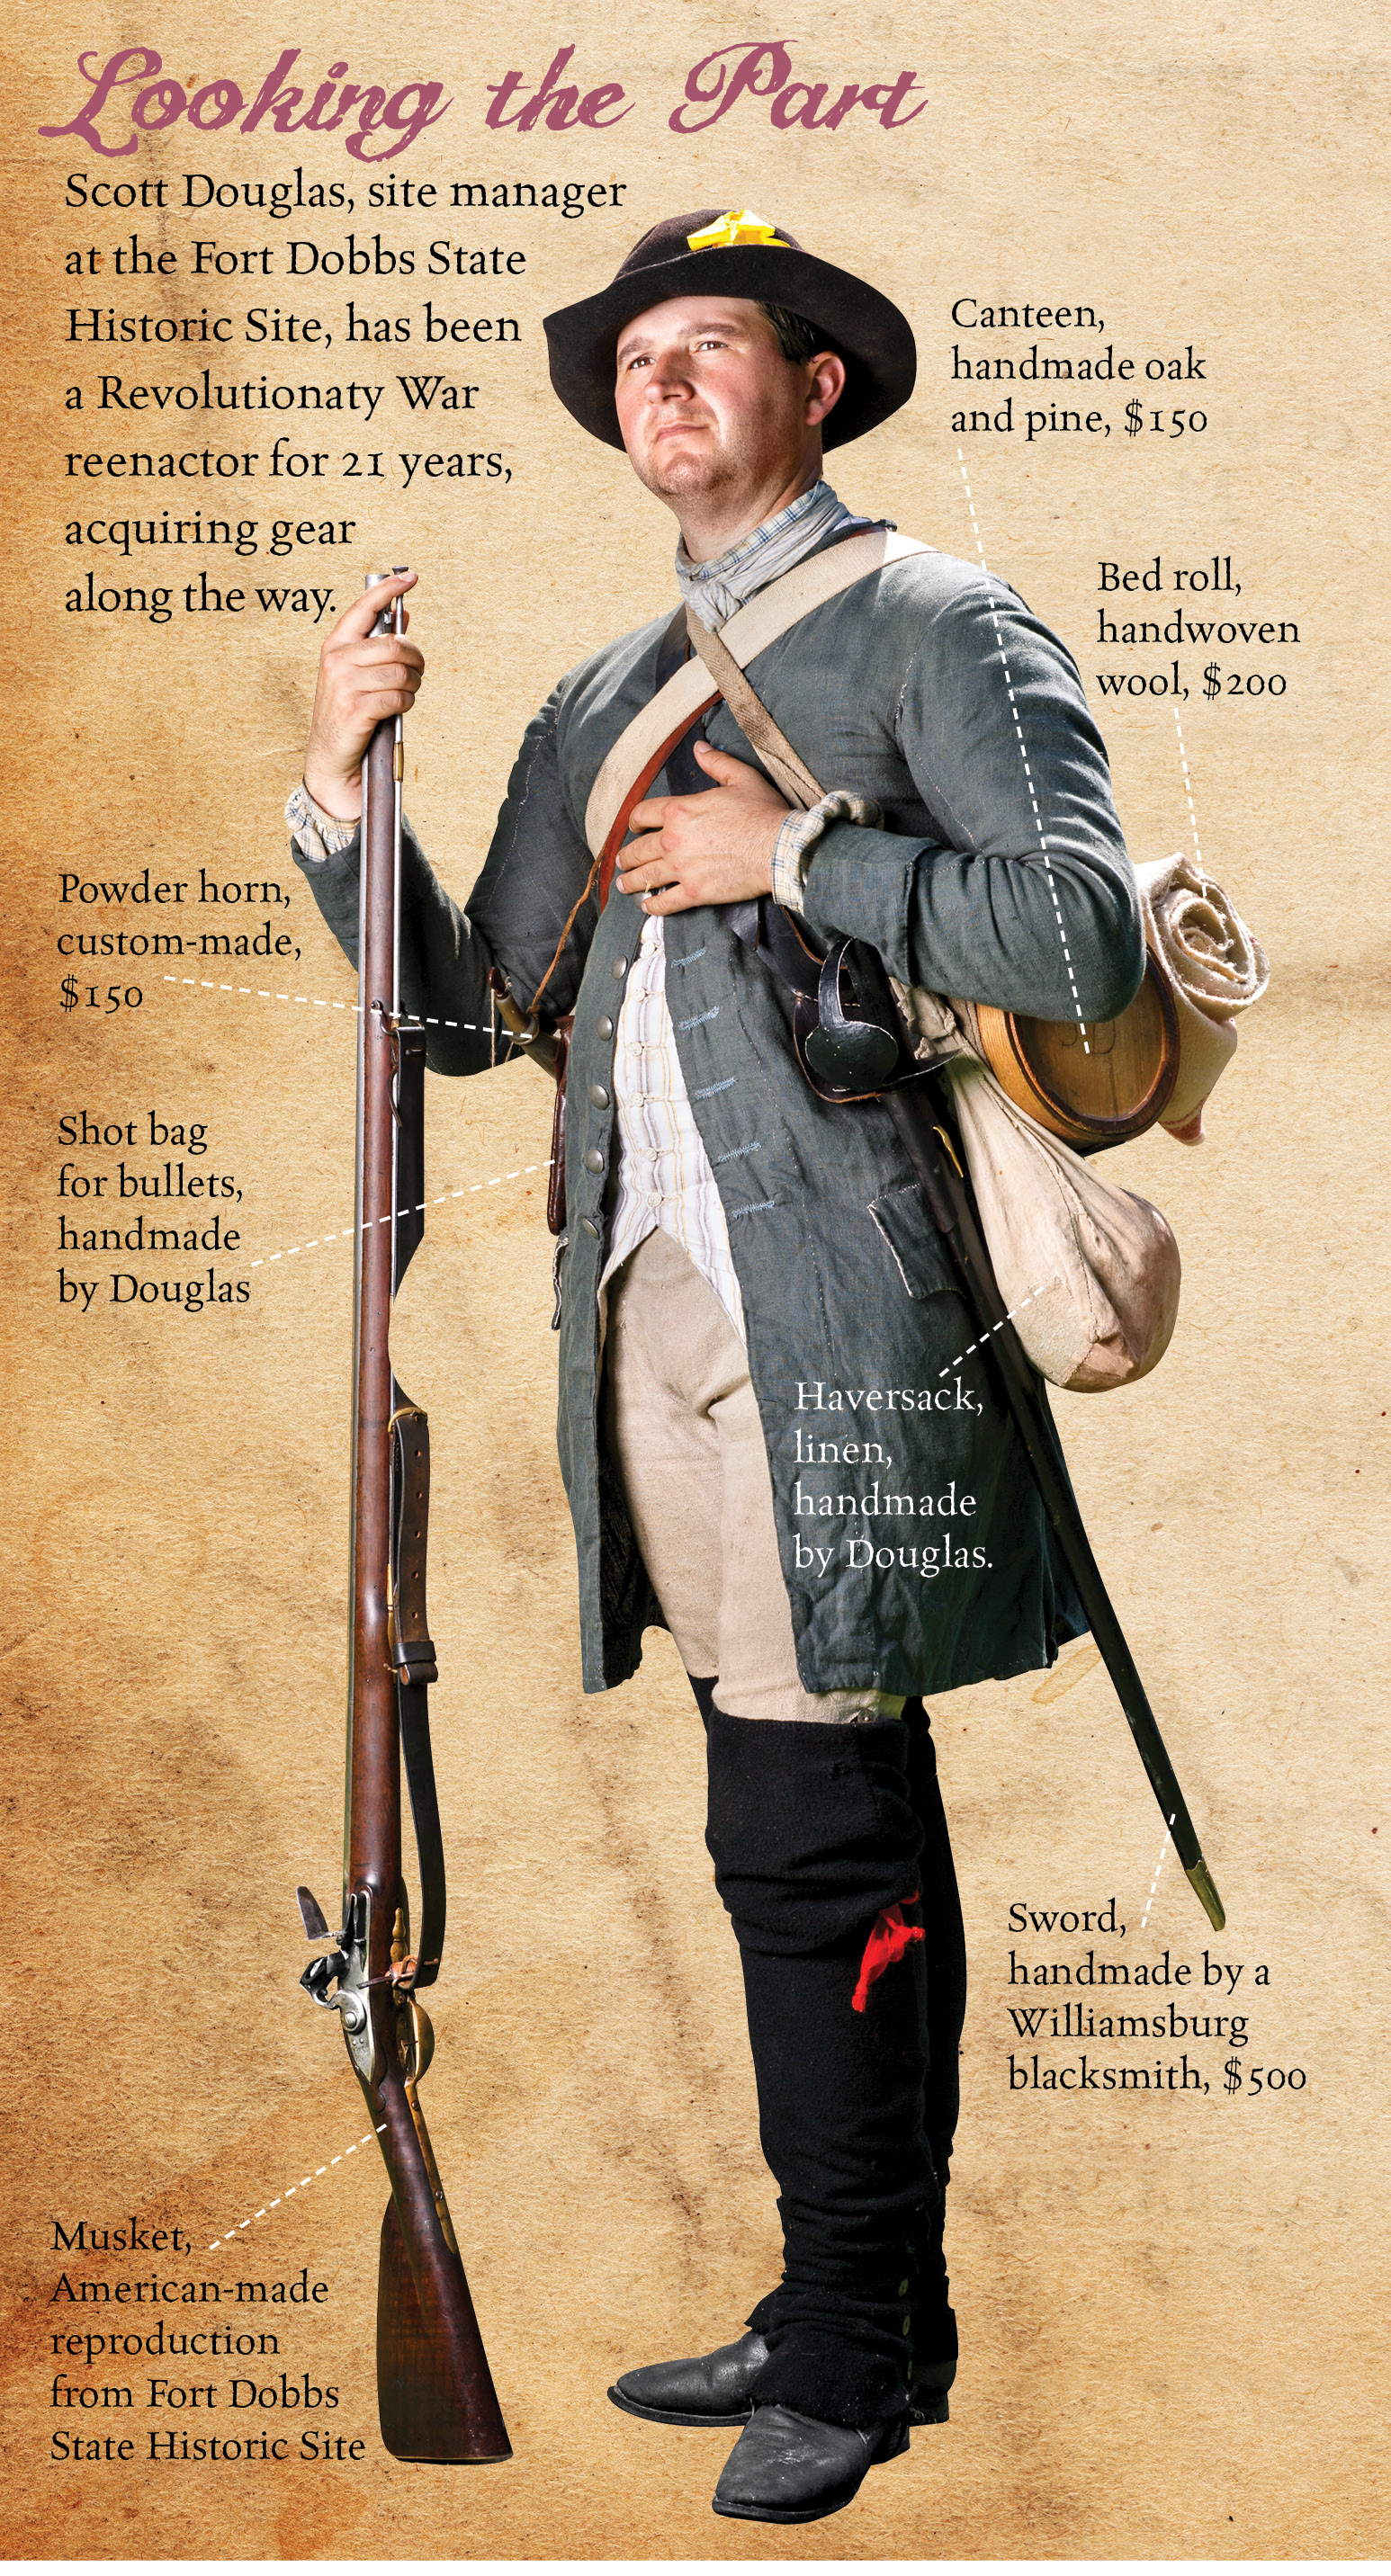 Diagram of Revolutionary War reenactor gear